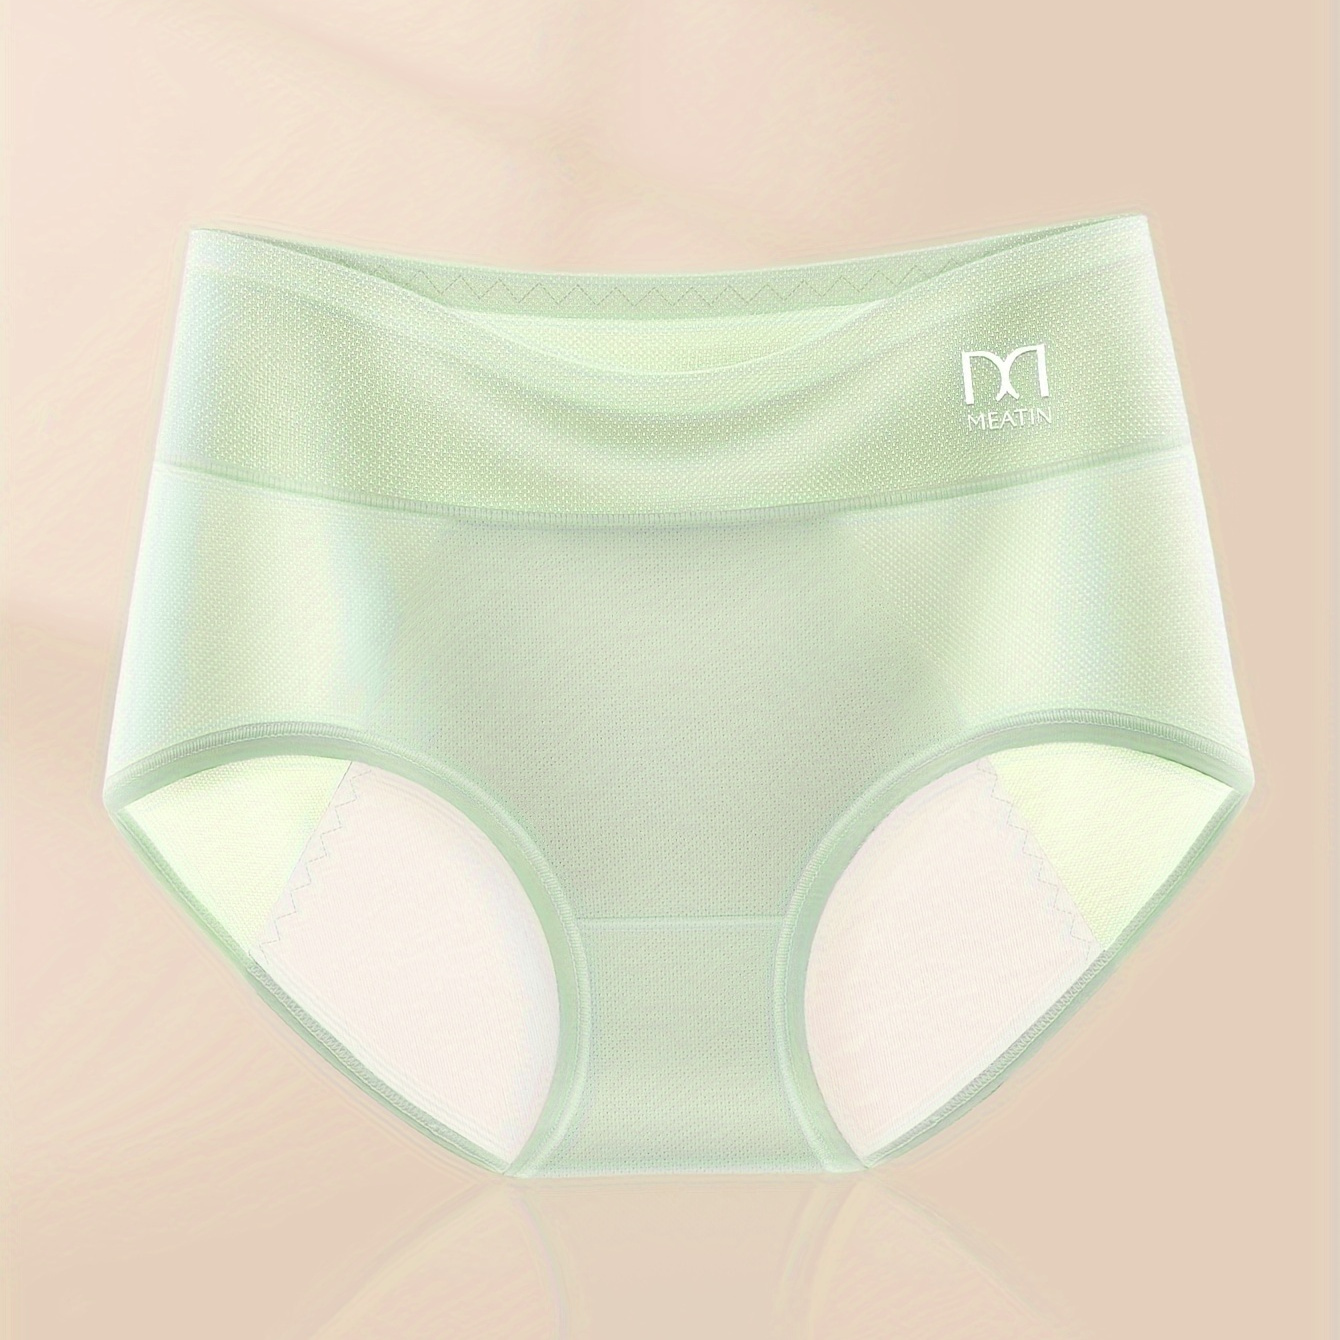 

Contrast Mesh Menstrual Period Panties, Comfy & Breathable Anti-leak Panties, Women's Lingerie & Underwear